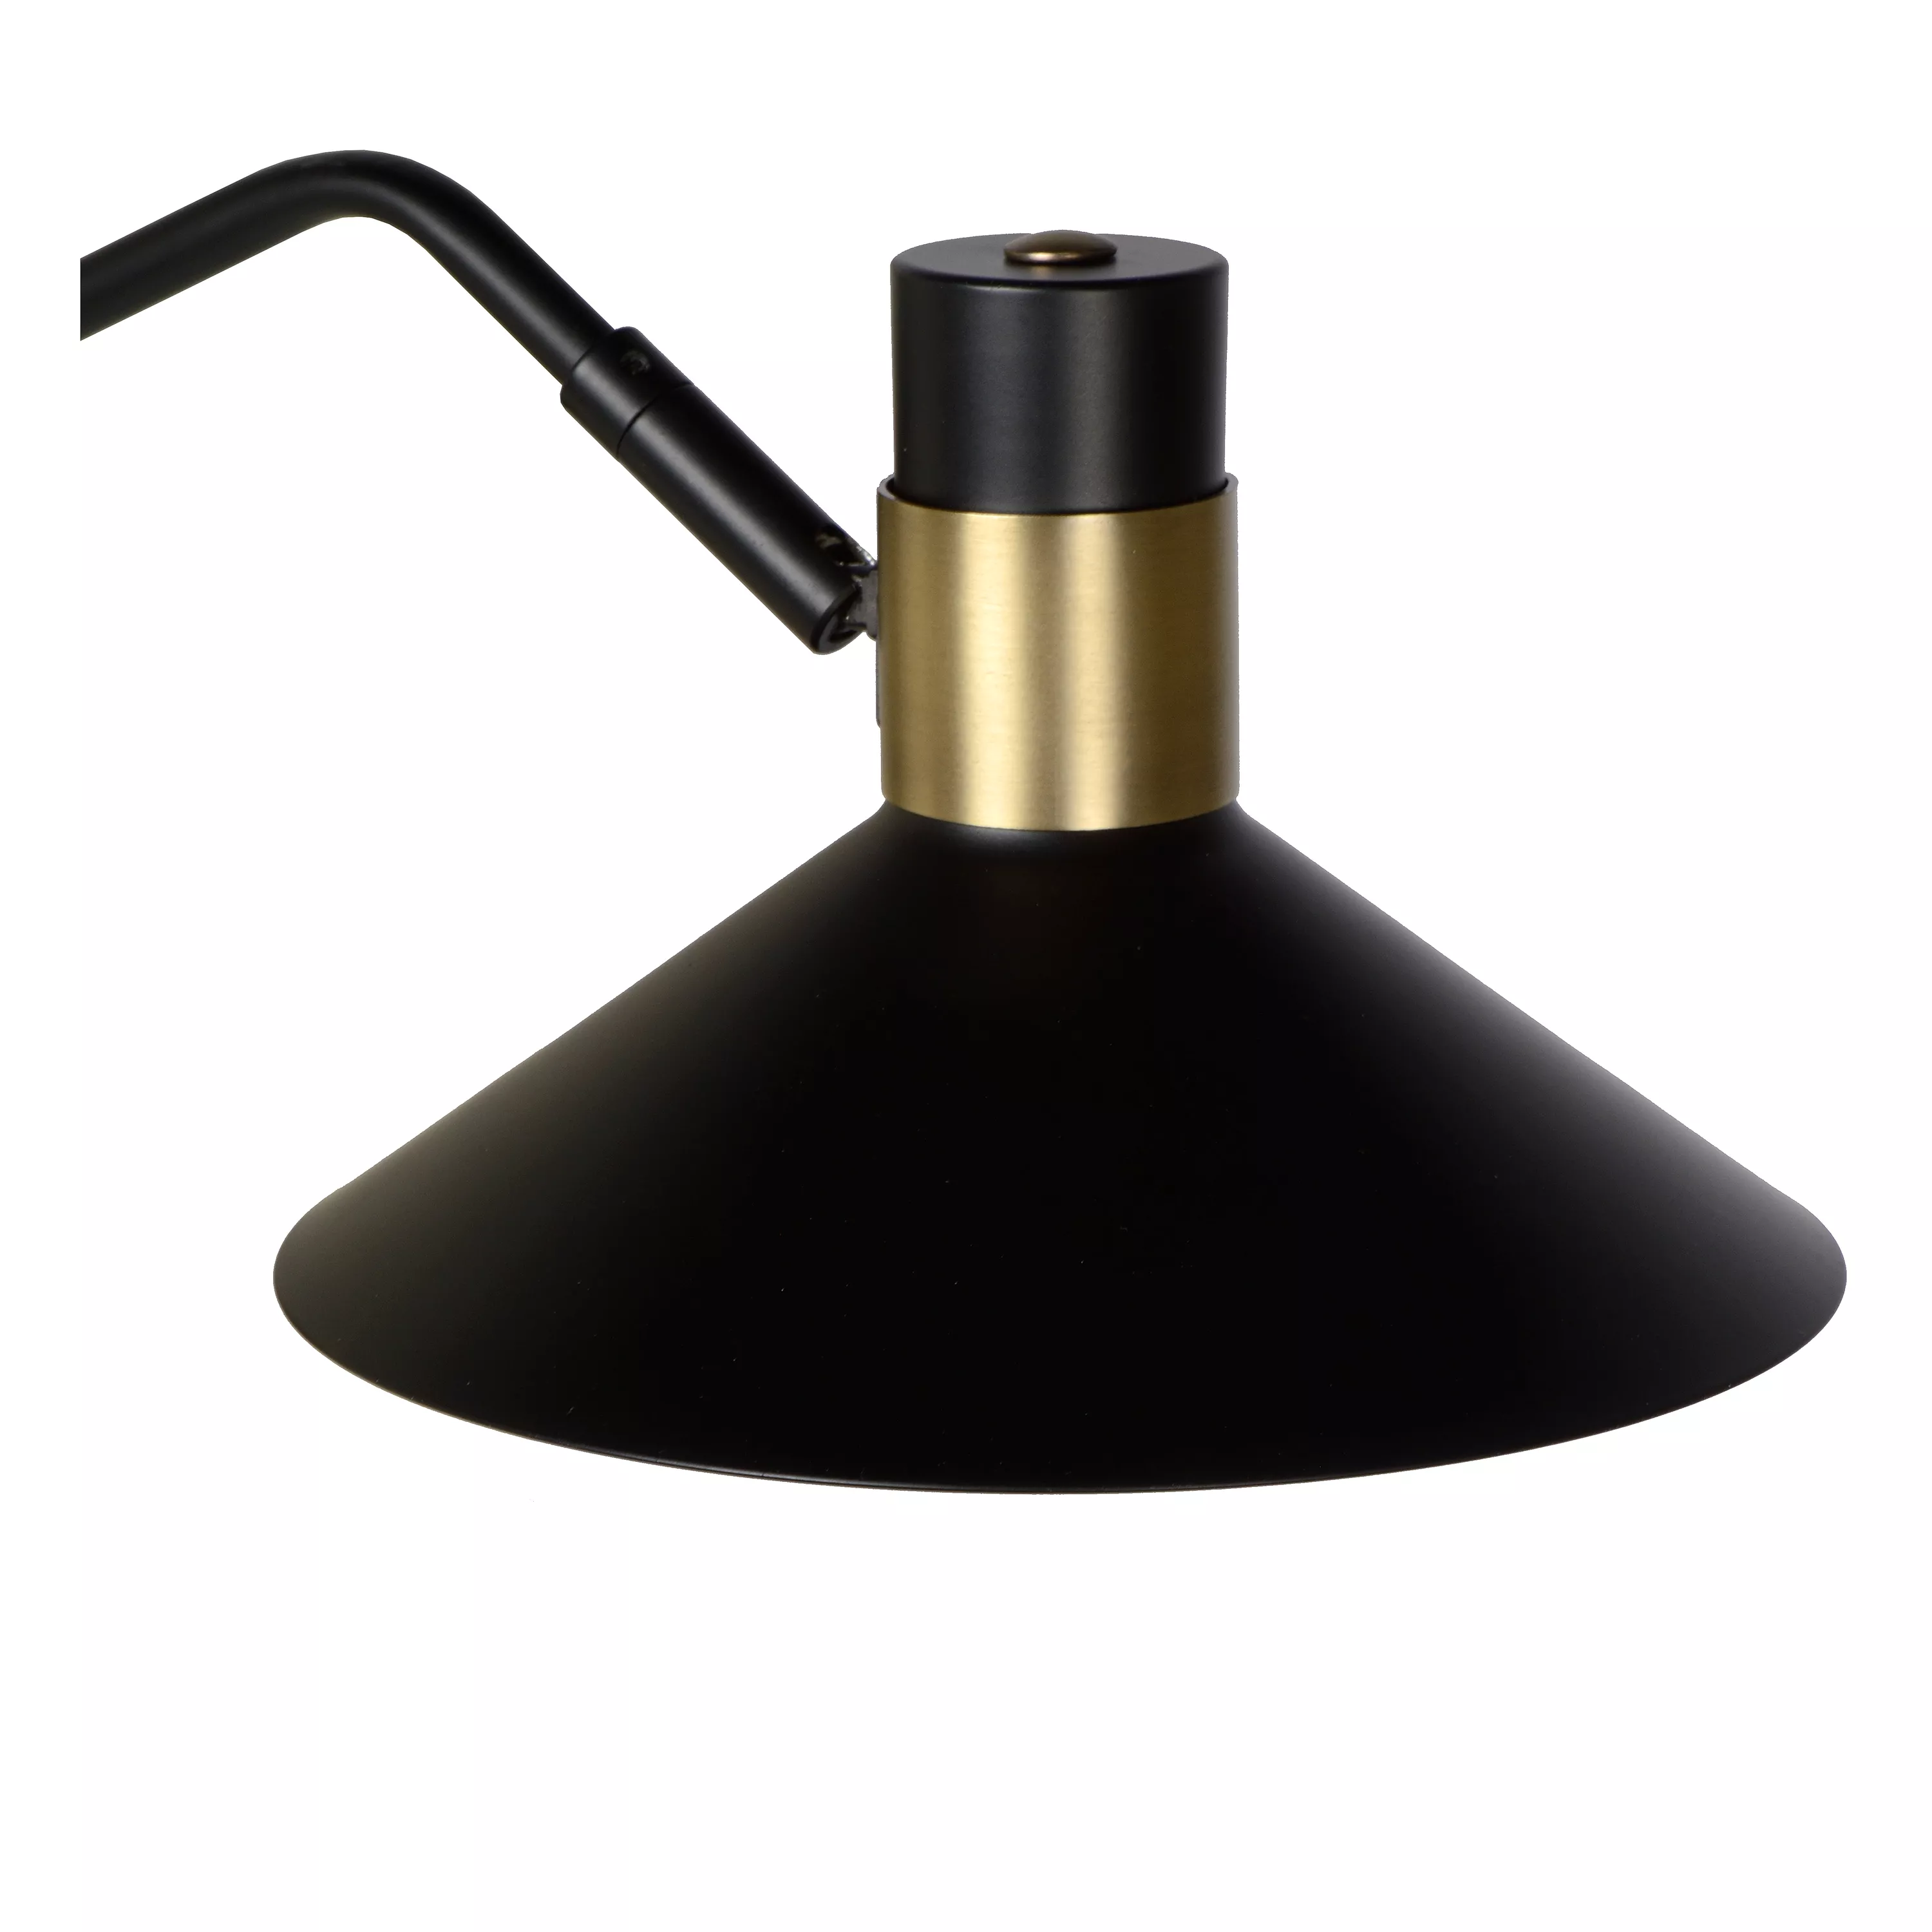 Nástěnné svítidlo Pepijn v černé barvě s mosazí, vhodné do obývacího pokoje nebo ložnice.